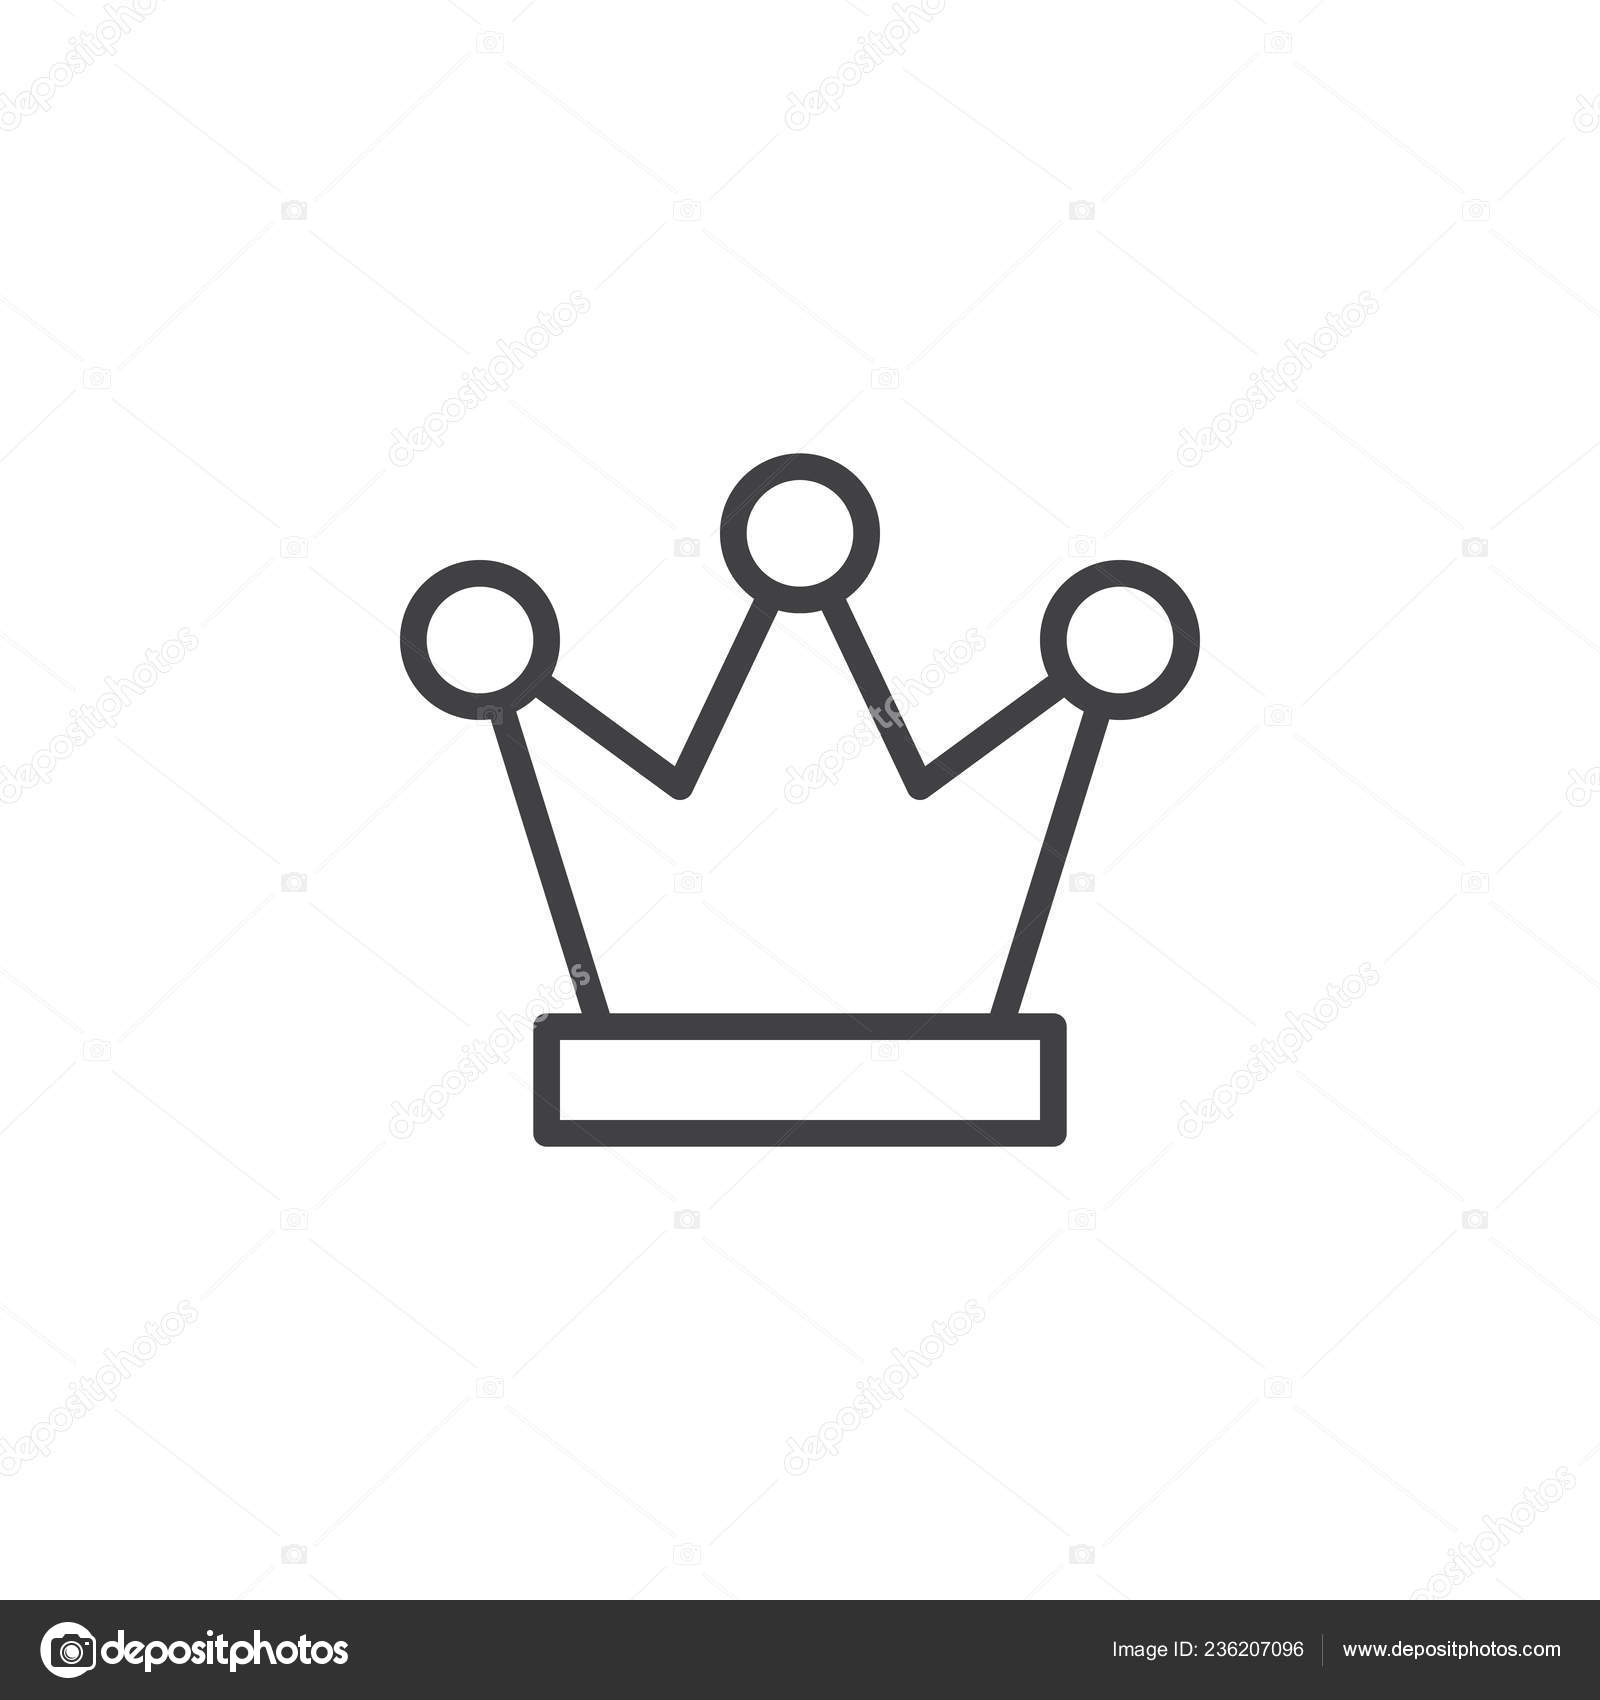 Vetores de Coroa De Rei E Rainha Símbolo De Xadrez Ícones De Royal